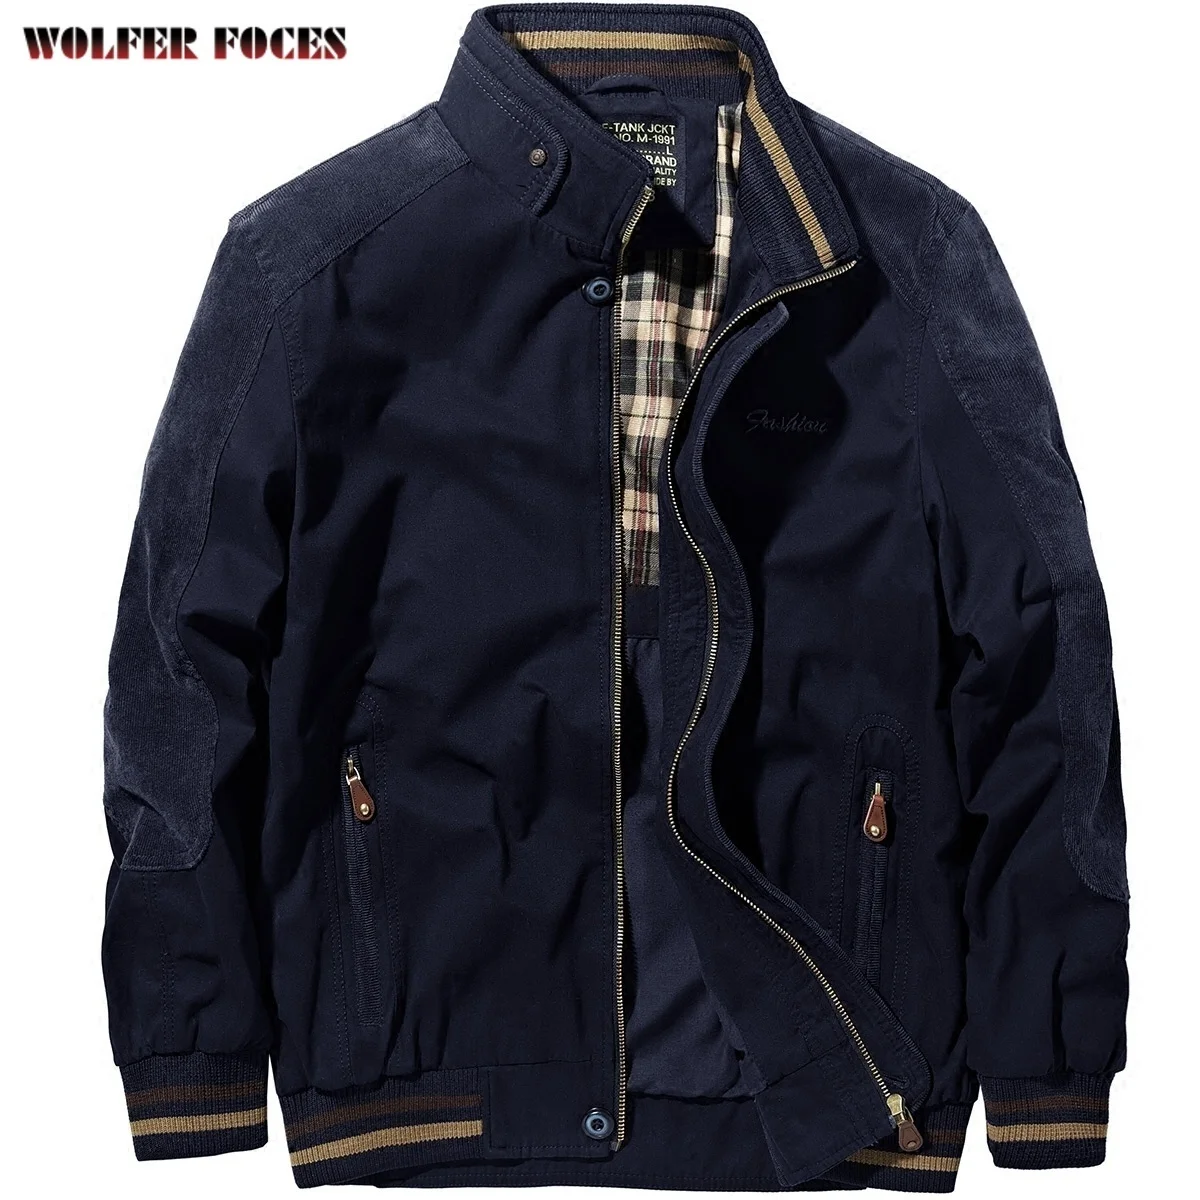 Winter Large Size Men's Jacket Fashionable Heating Bomber Tactical Jackets Military Casual Coat Luxury Elegant Withzipper Jacket